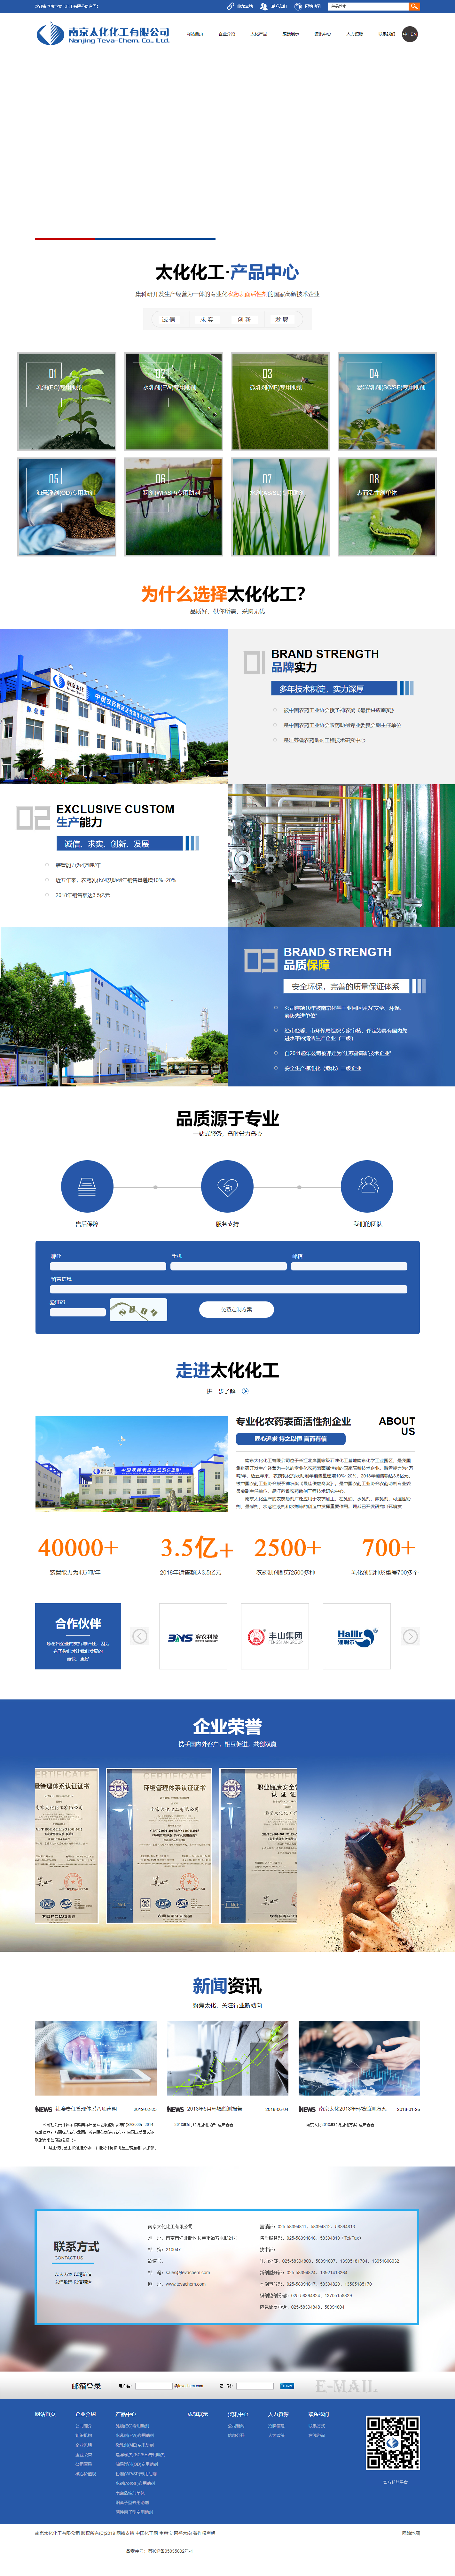 南京太化化工有限公司网站案例